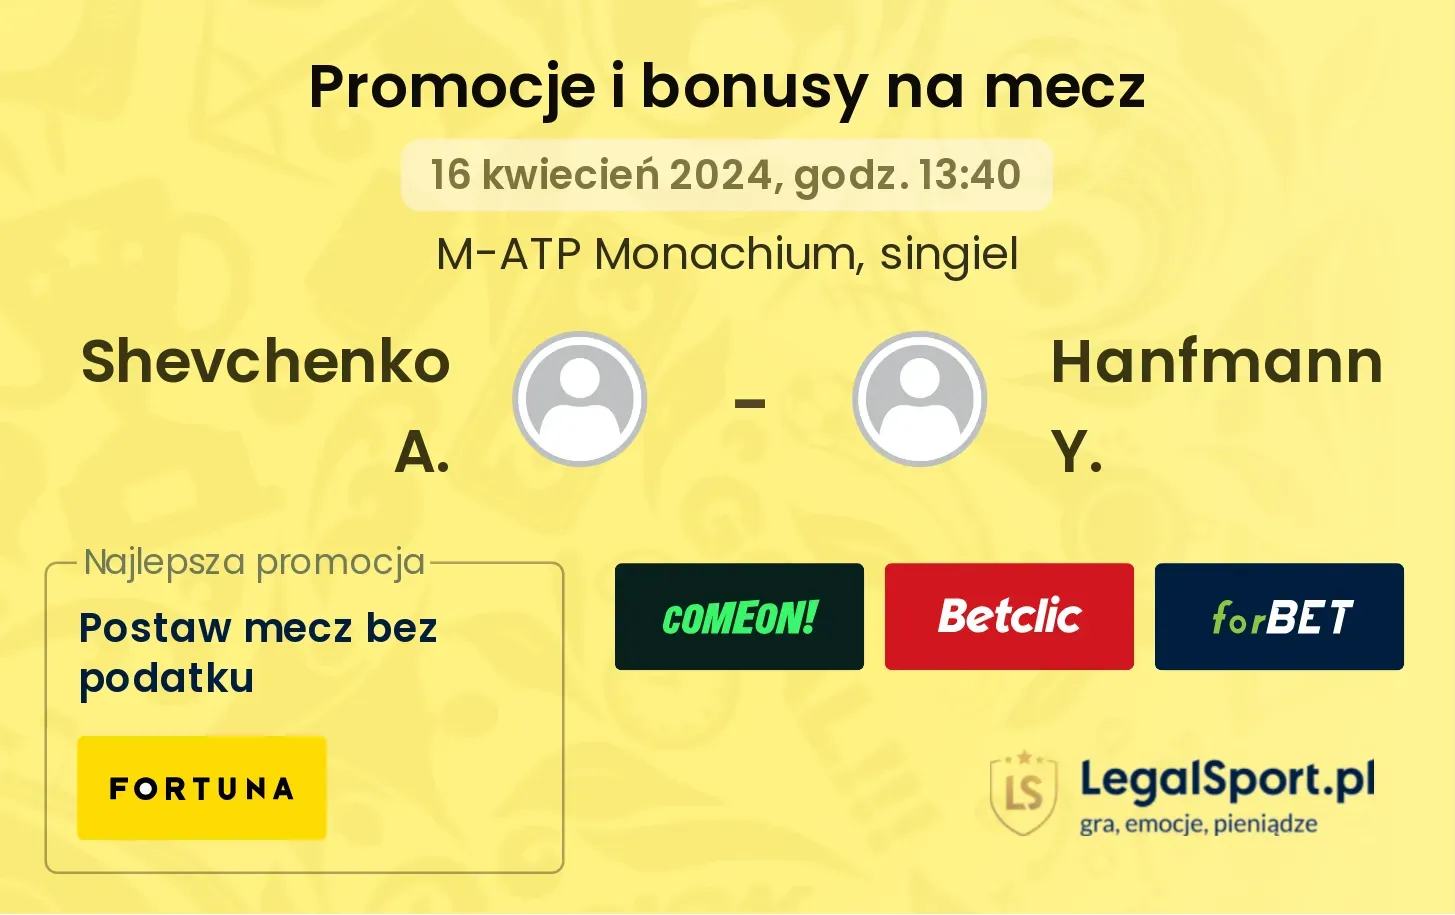 Shevchenko A. - Hanfmann Y. promocje bonusy na mecz